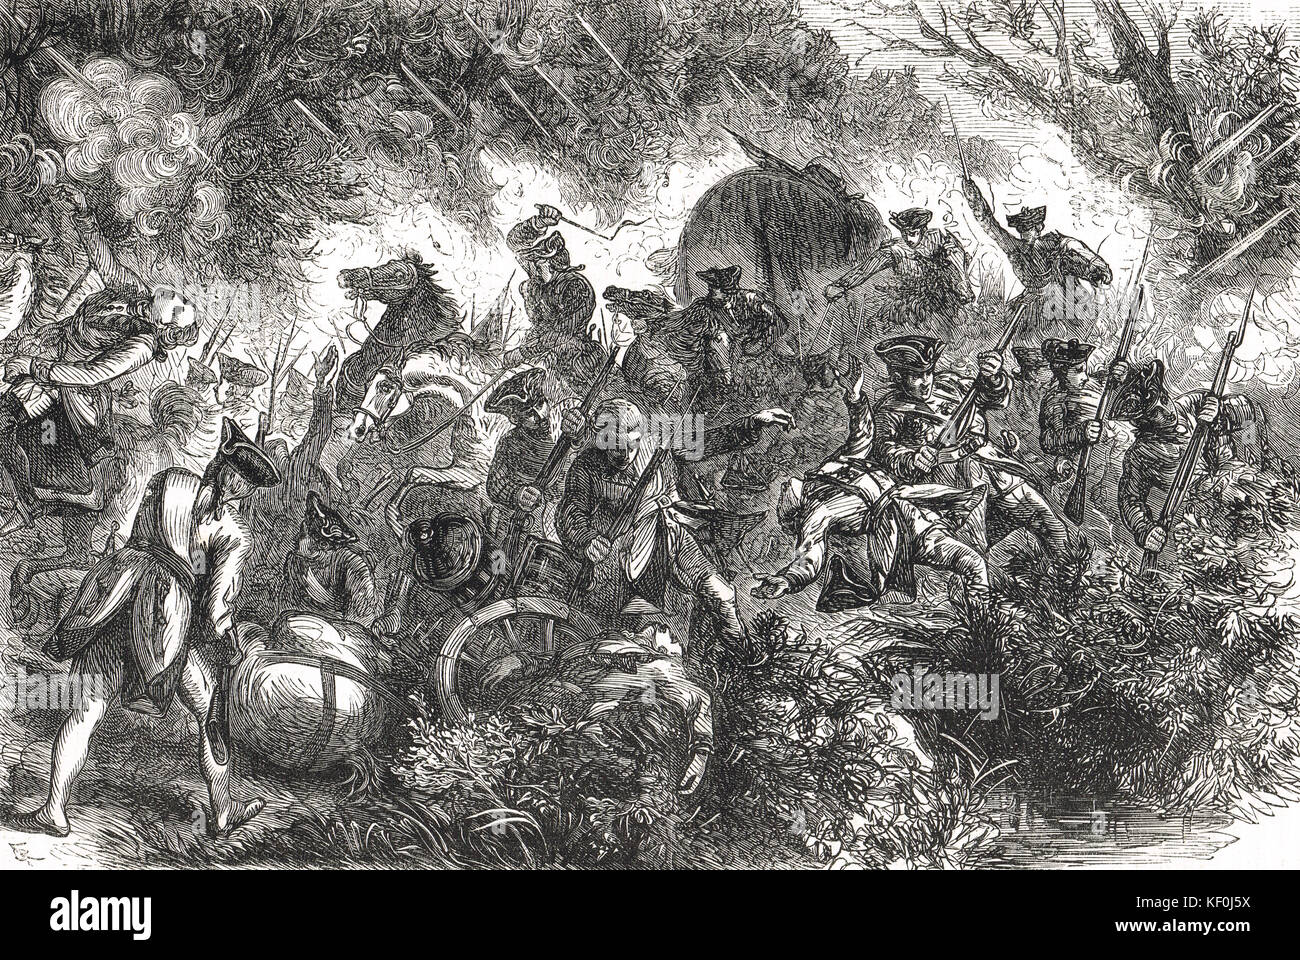 Battaglia della Monongahela, 9 luglio 1755 (sconfitta di Braddock). Foto Stock